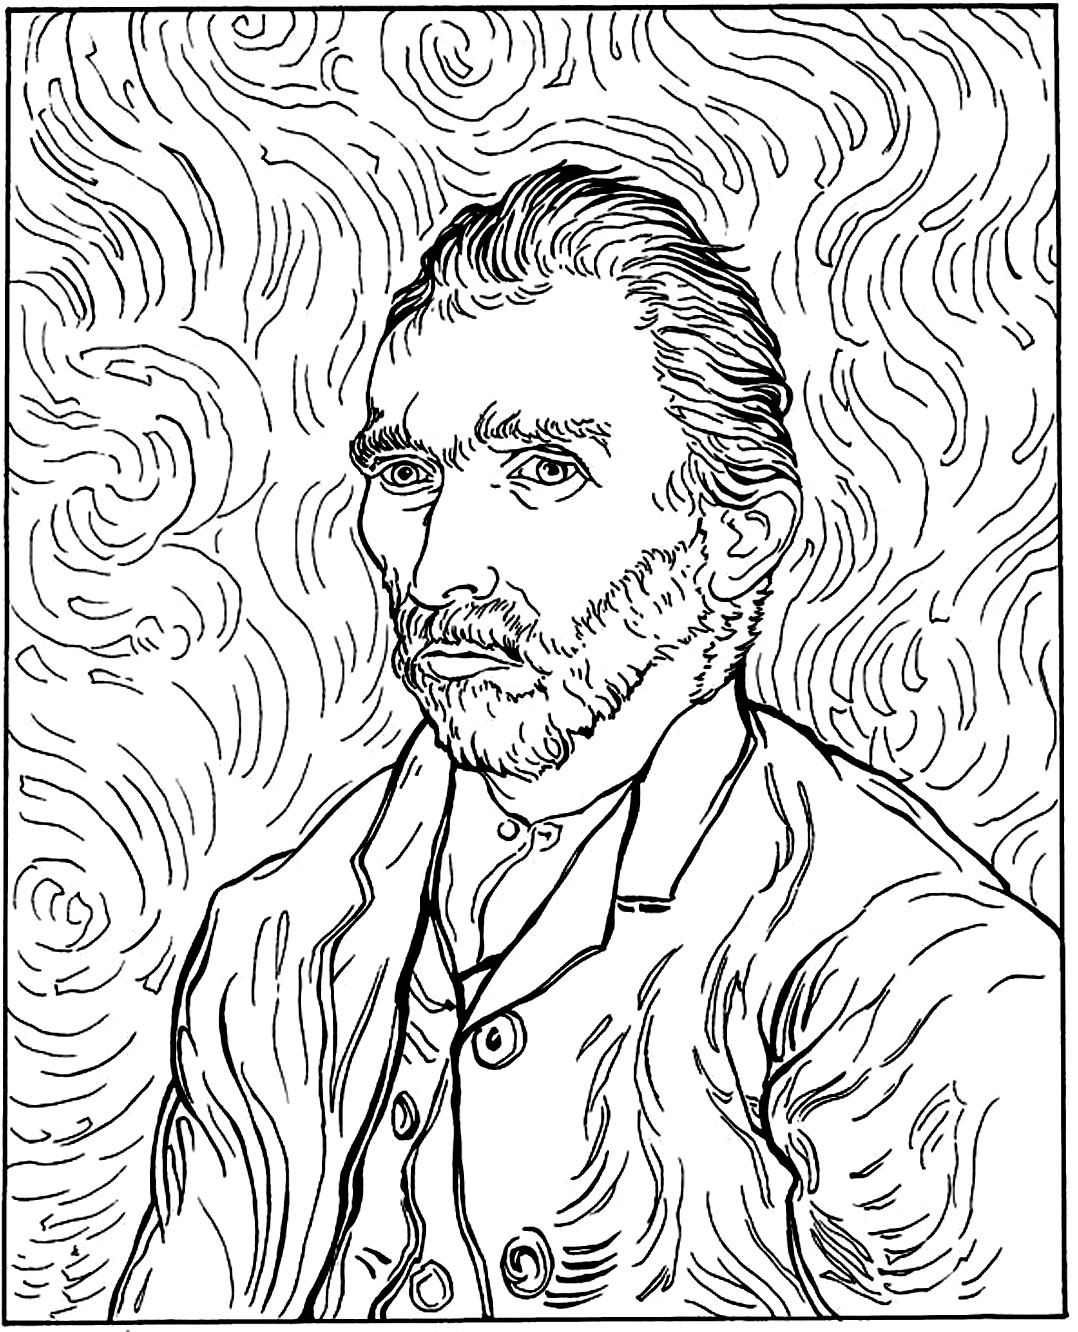 Van Gogh - Autorretrato. Colorea a Vincent Van Gogh en uno de sus famosos autorretratos.